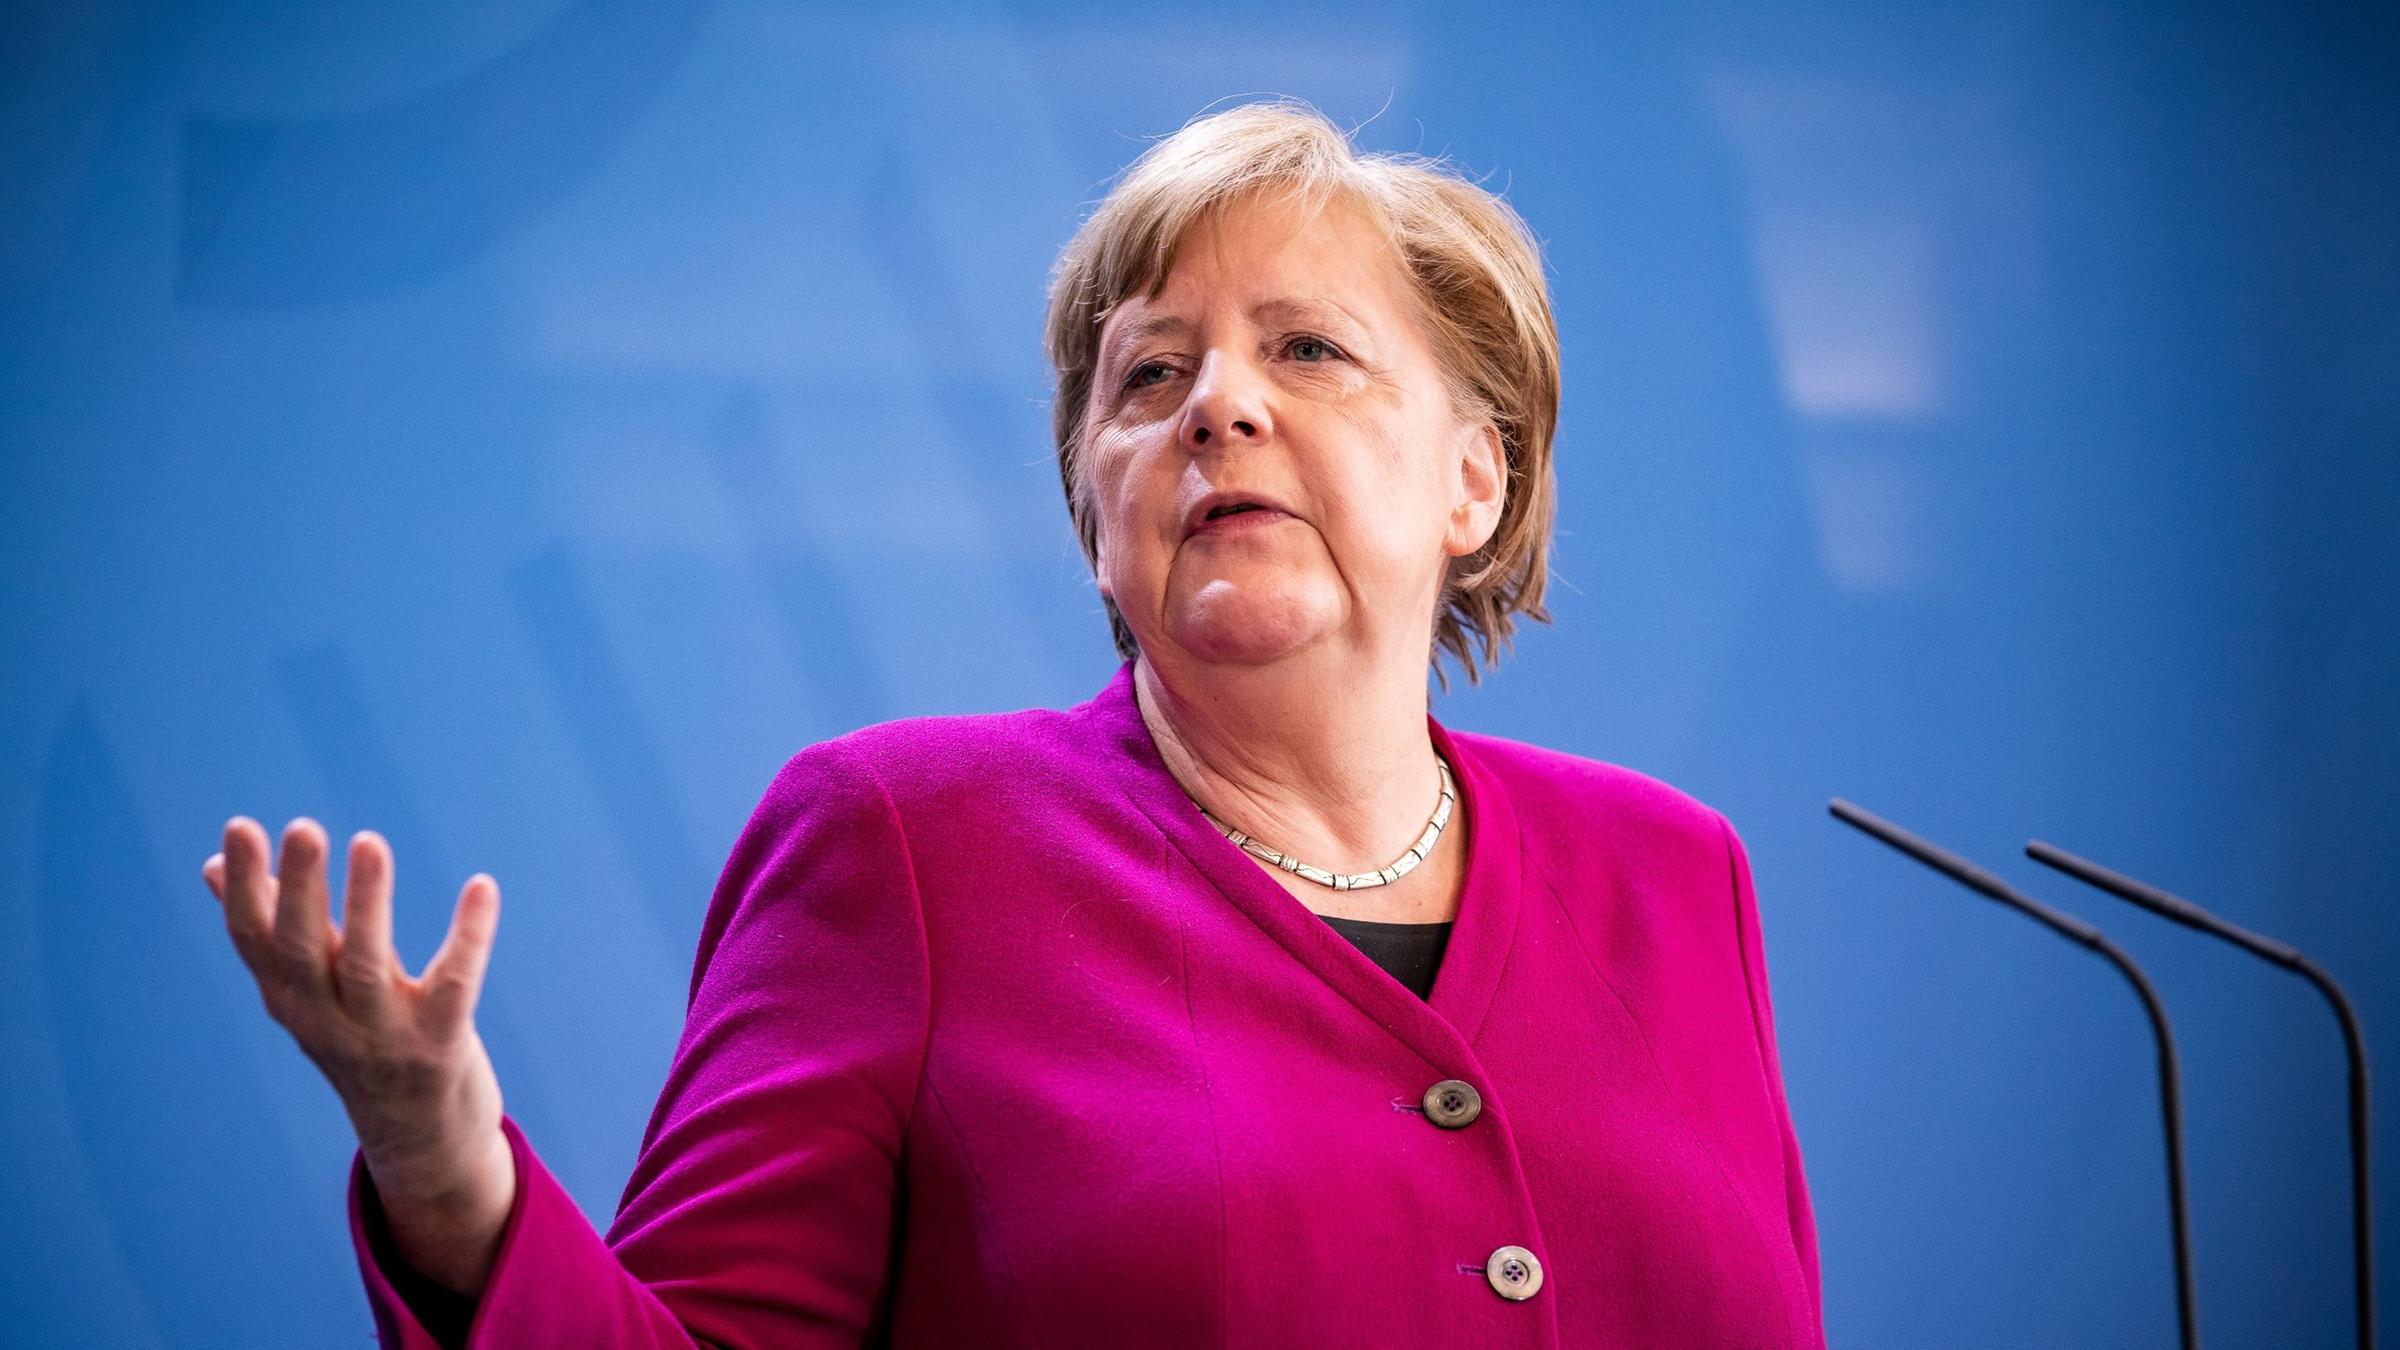 COVID-19: Germania ar putea impune noi restricții pentru a combate pandemia